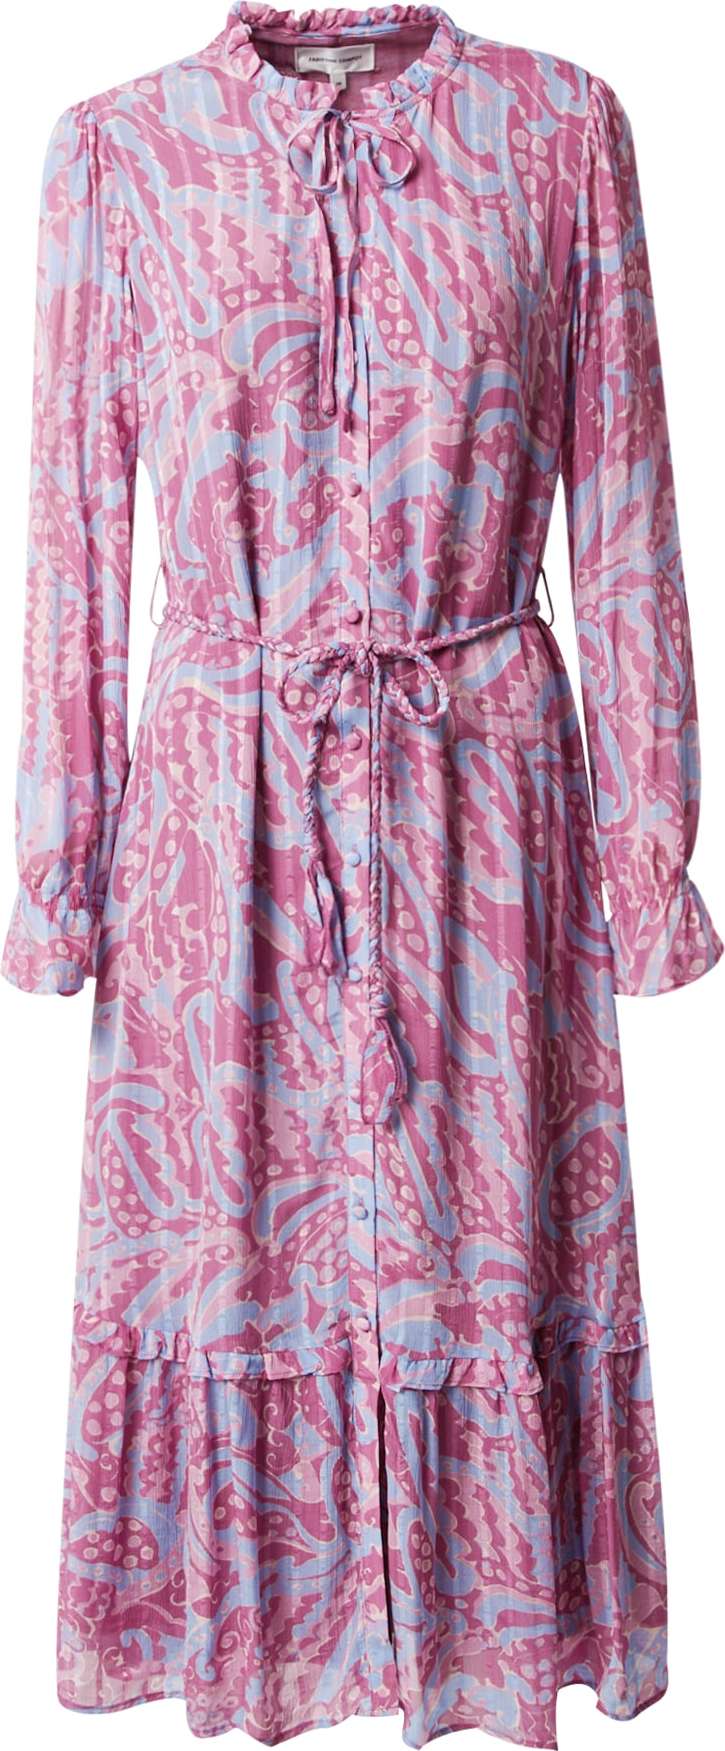 Fabienne Chapot Košilové šaty 'Marilene' světlemodrá / fialová / růžová / bílá